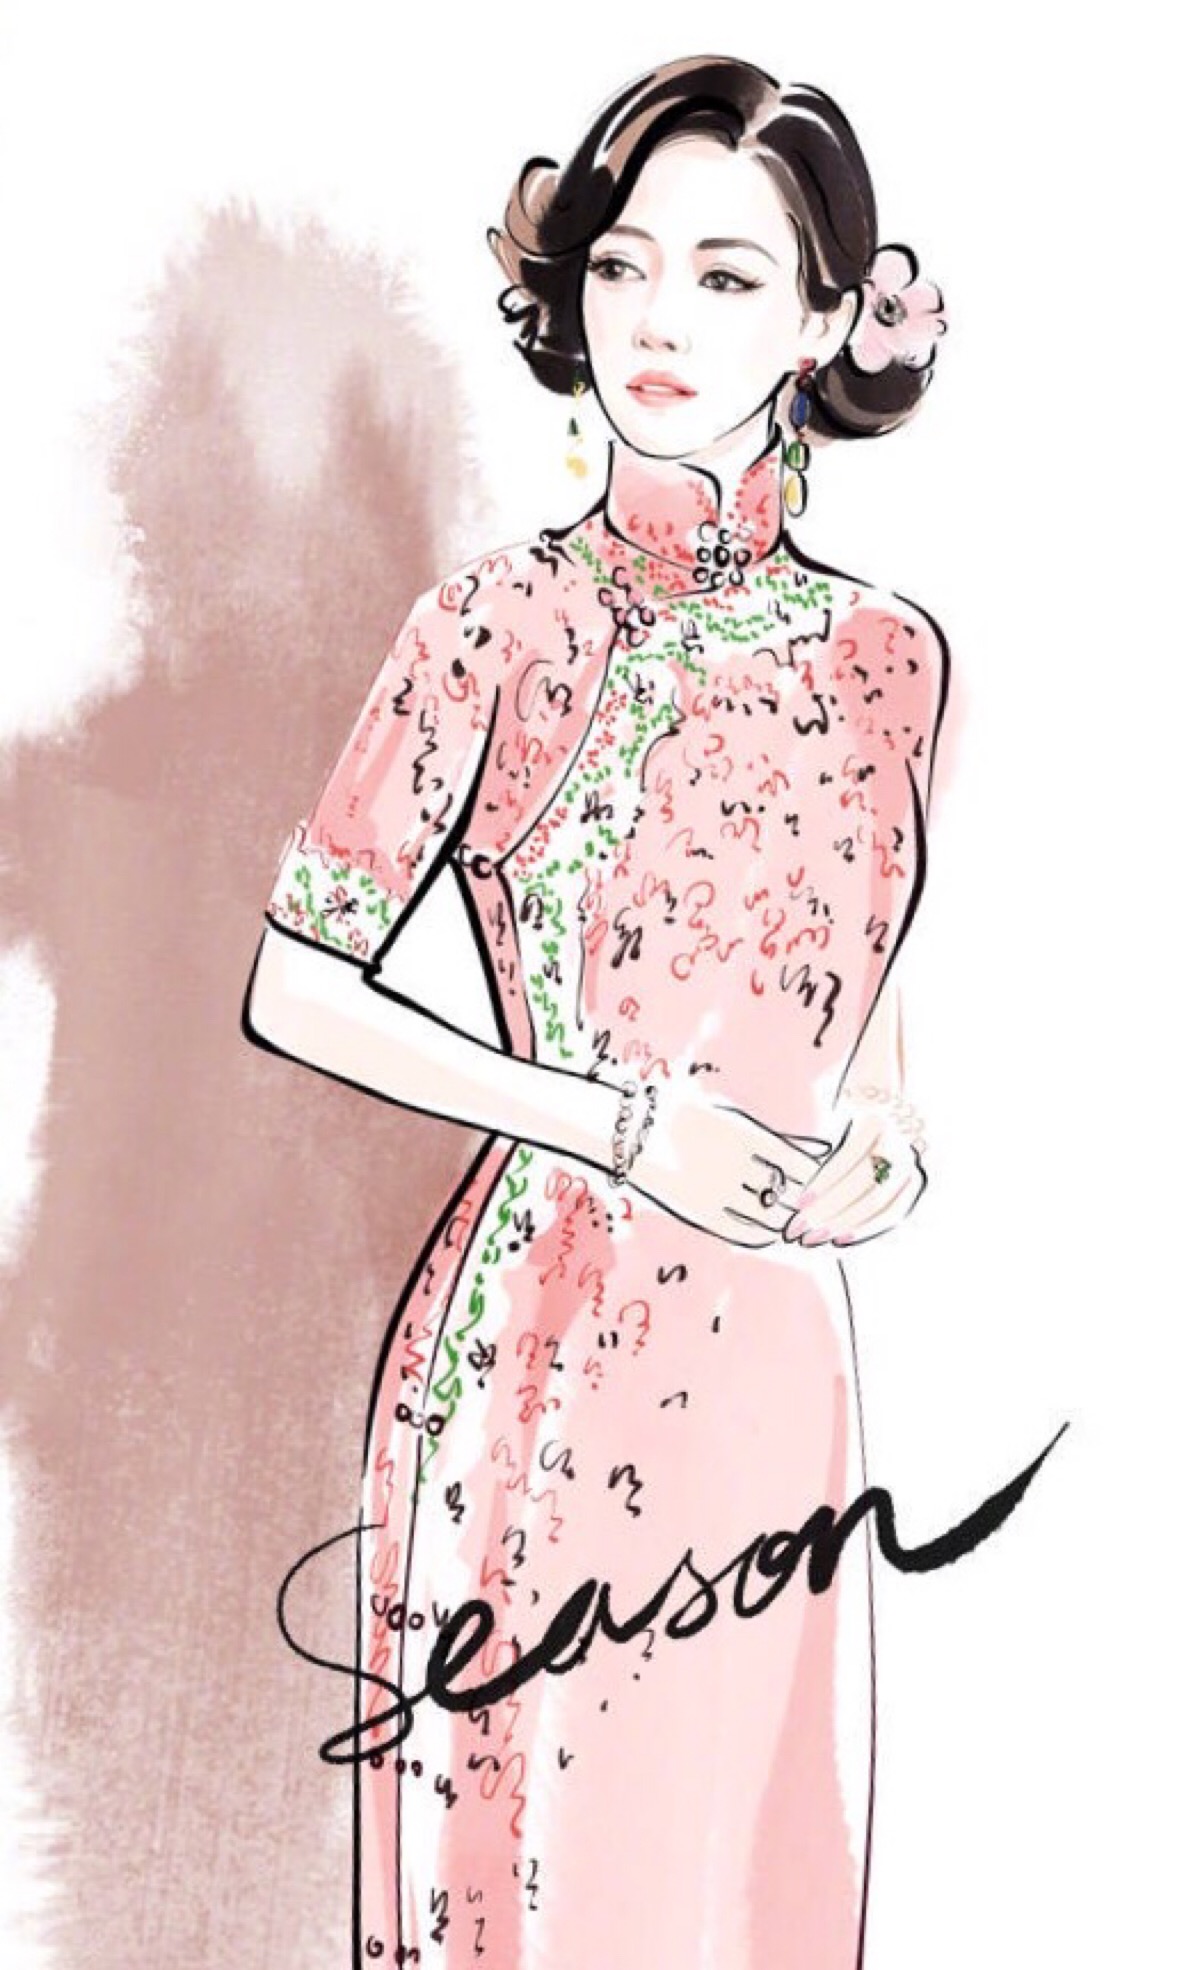 服装设计 手稿 时尚 欧美 手绘 杂志 模特 插画 明星 旗袍